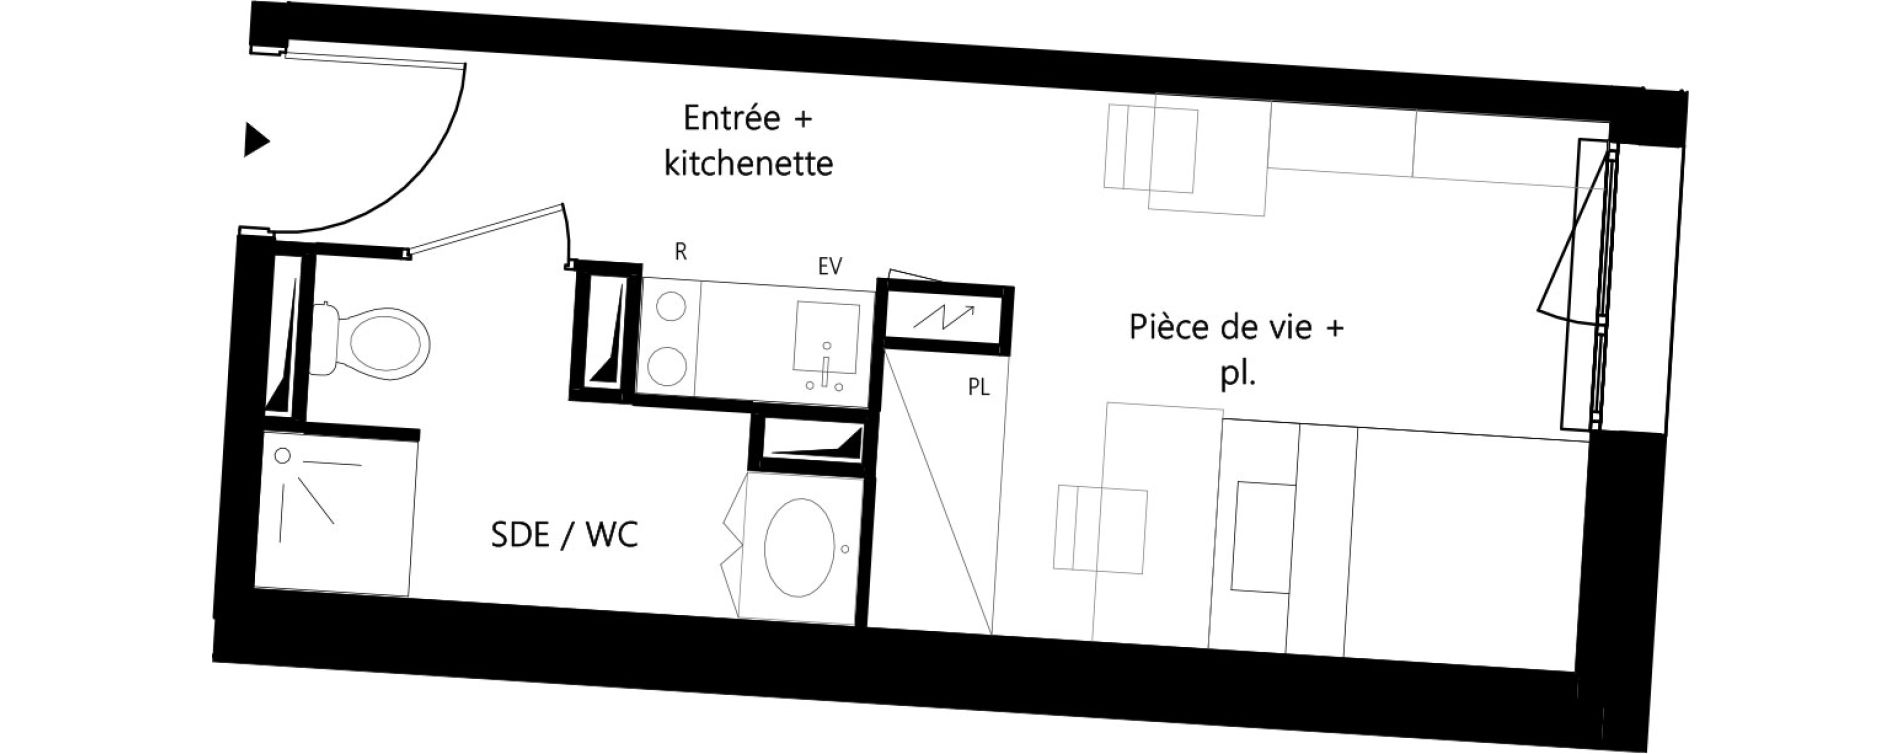 Appartement T1 meubl&eacute; de 18,36 m2 &agrave; Montauban Villebourbon - gare